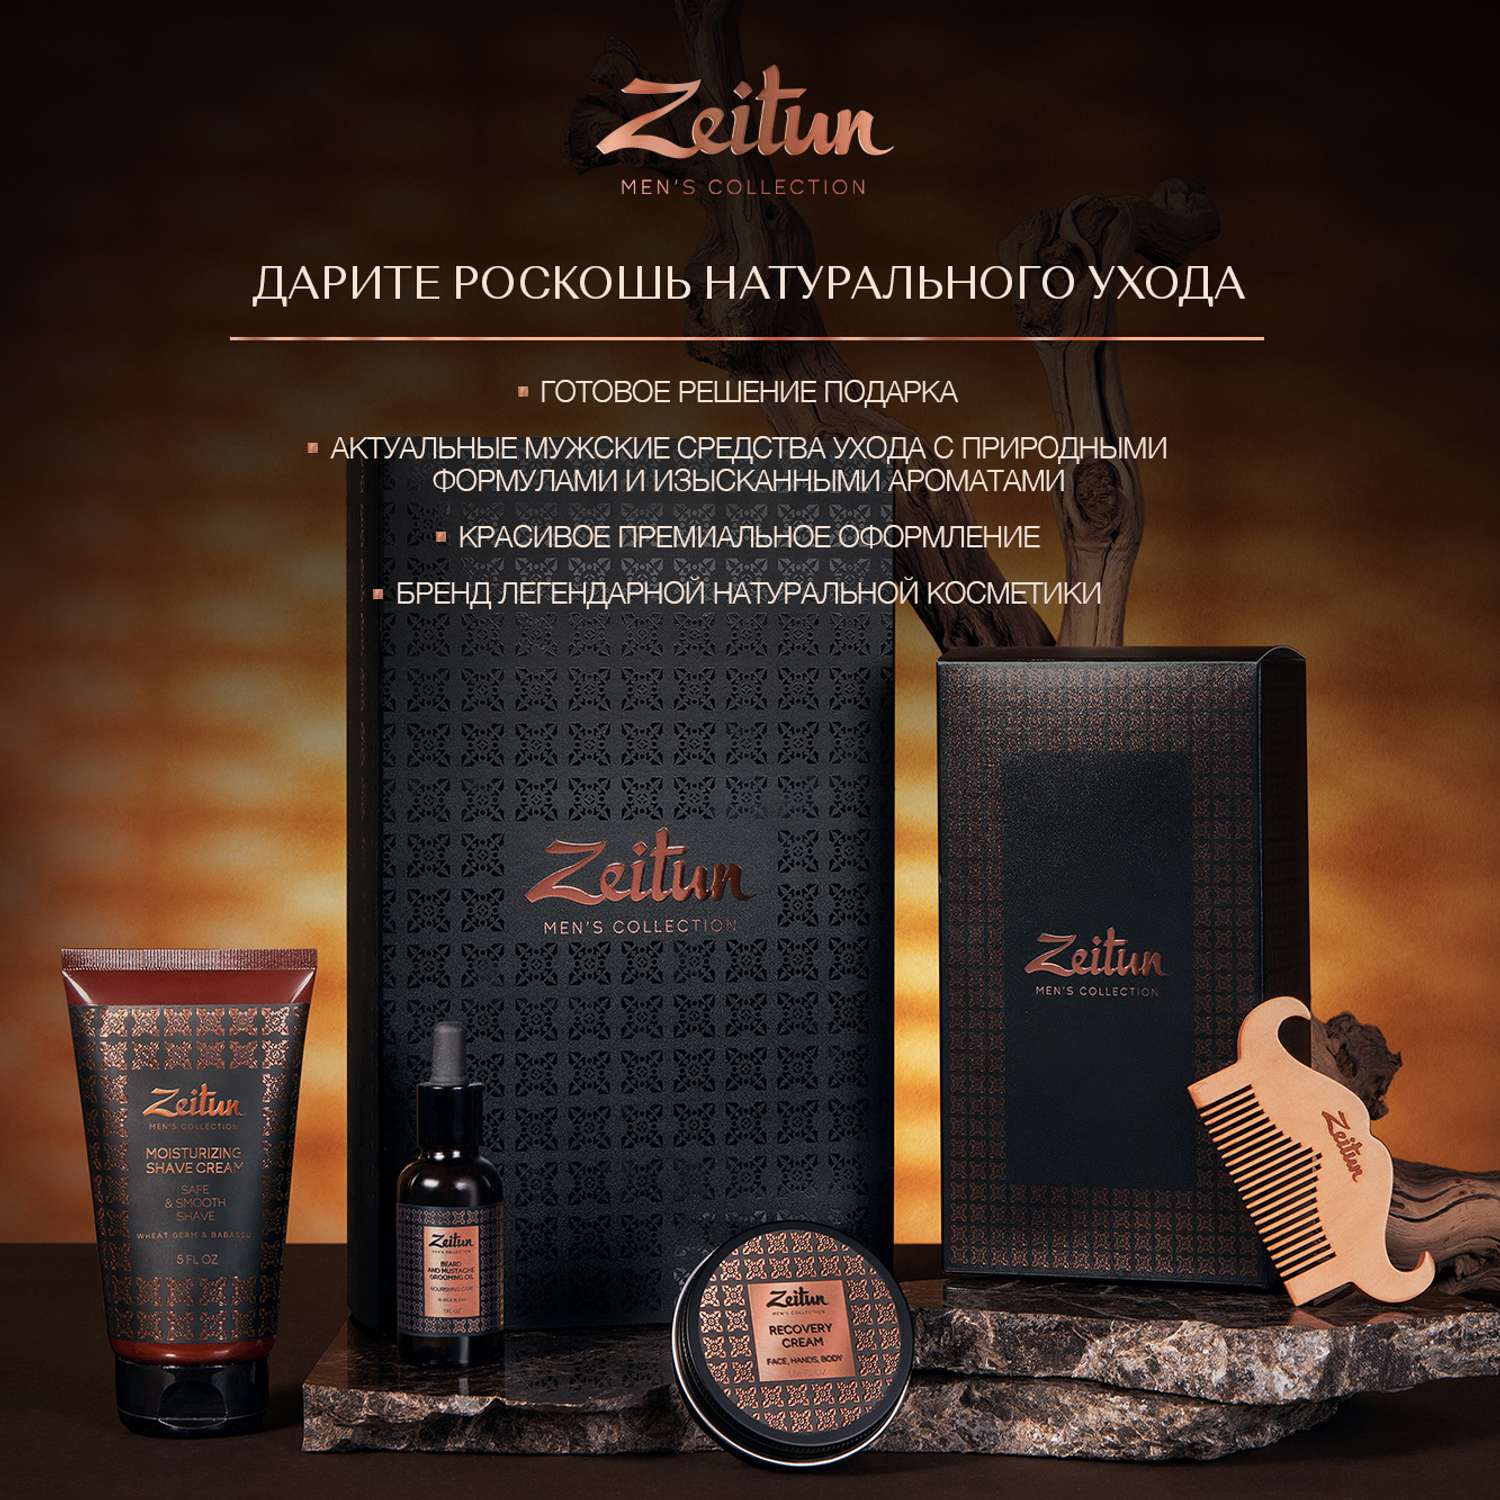 Подарочный набор Zeitun для мужчин Практичный подход шампунь гель для душа крем для бритья - фото 13